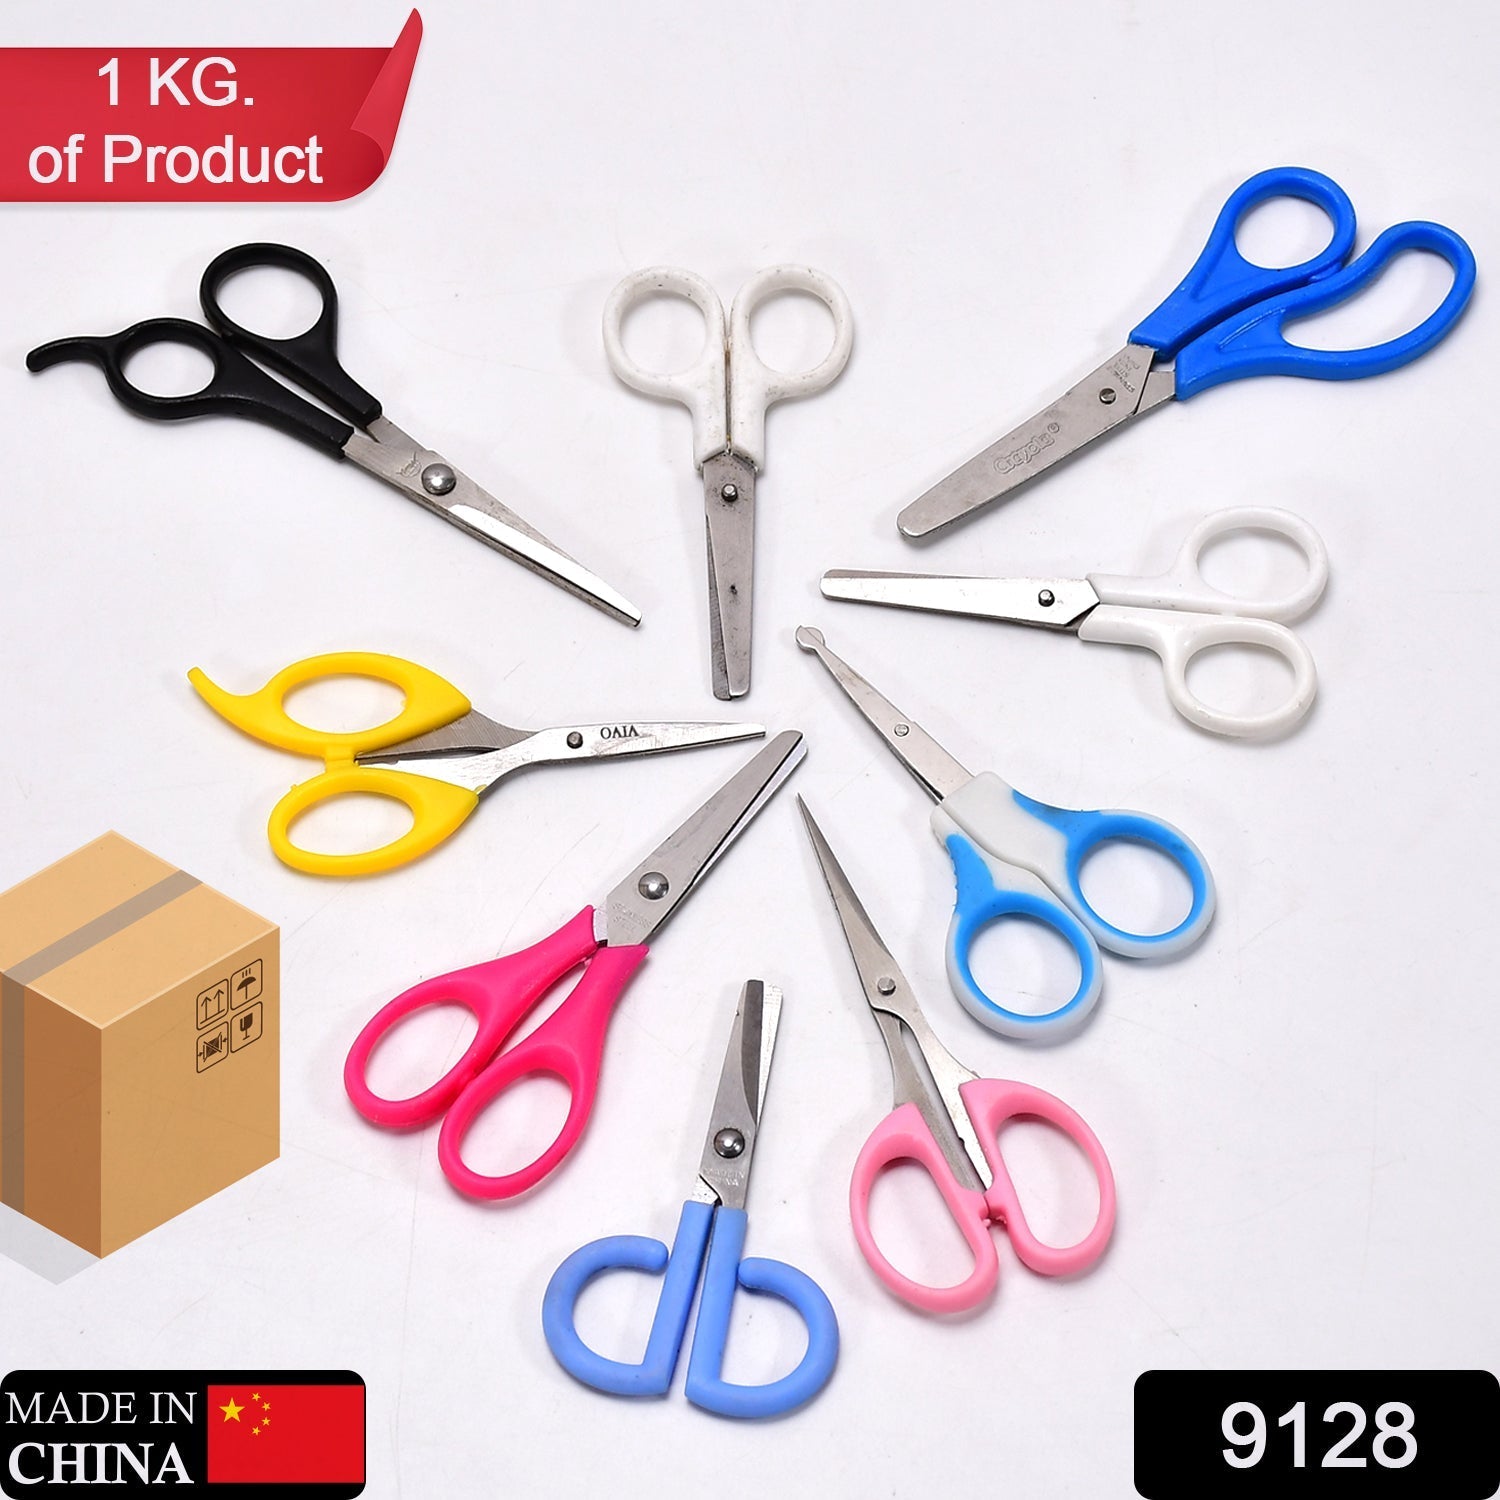 9128 Multipurpose Large Stainless Steel Scissor For Home Scissors/Office Scissors/School Work Scissors /Cutting / Croping Scissors /Tailoring Scissors ( Mix 1 Kg ) 